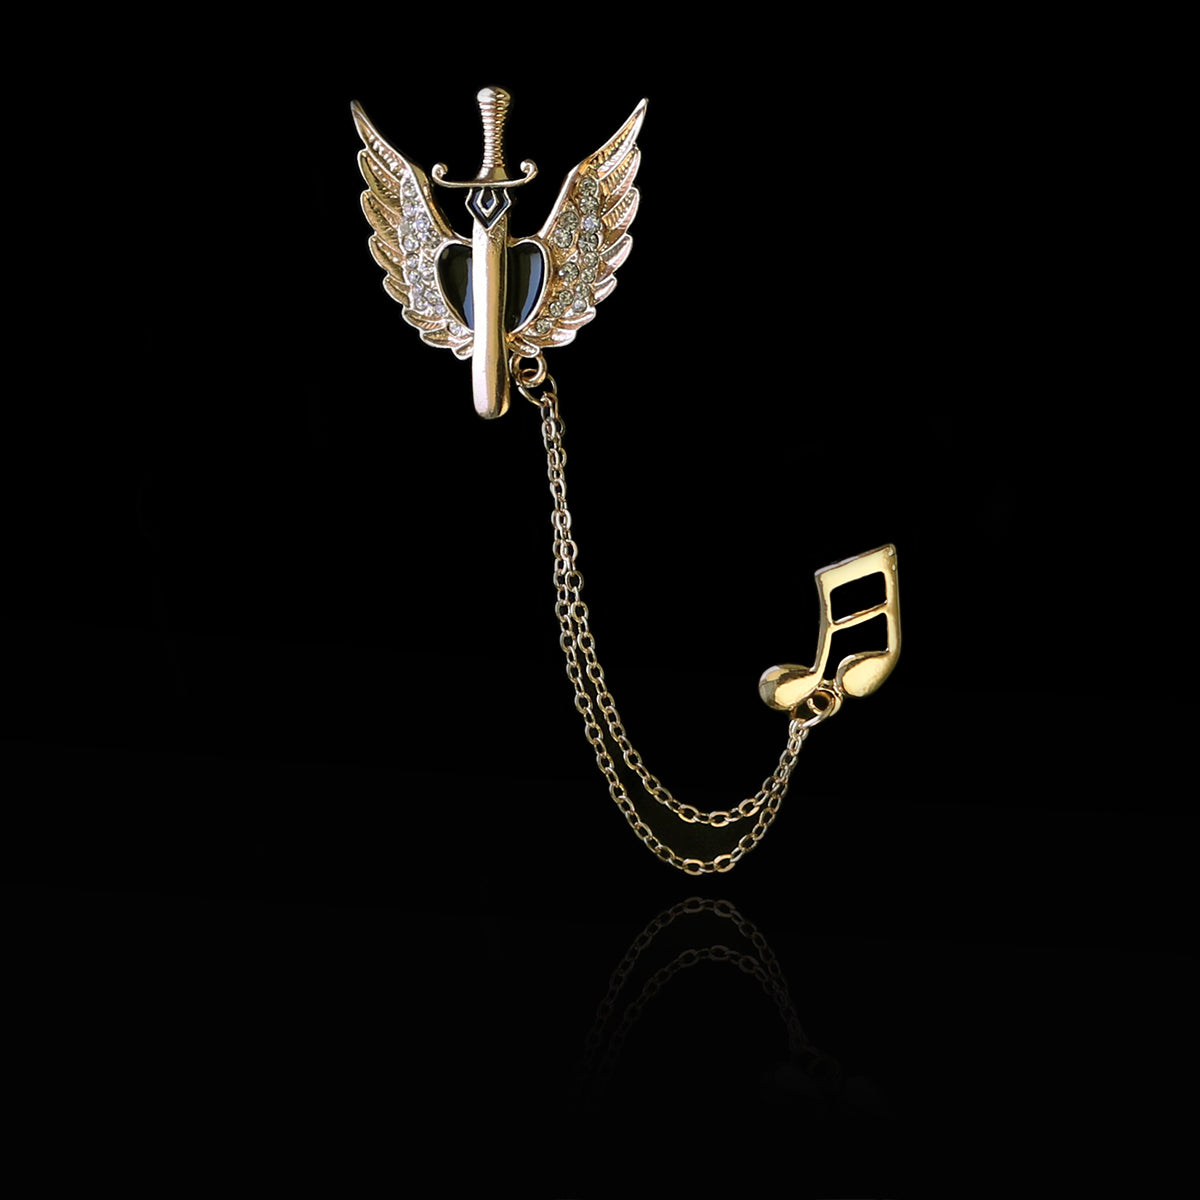 Brosa Chain Glaive - Gold